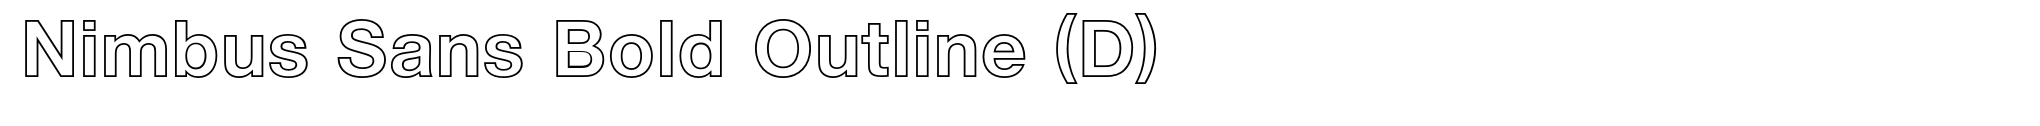 Nimbus Sans Bold Outline (D) image